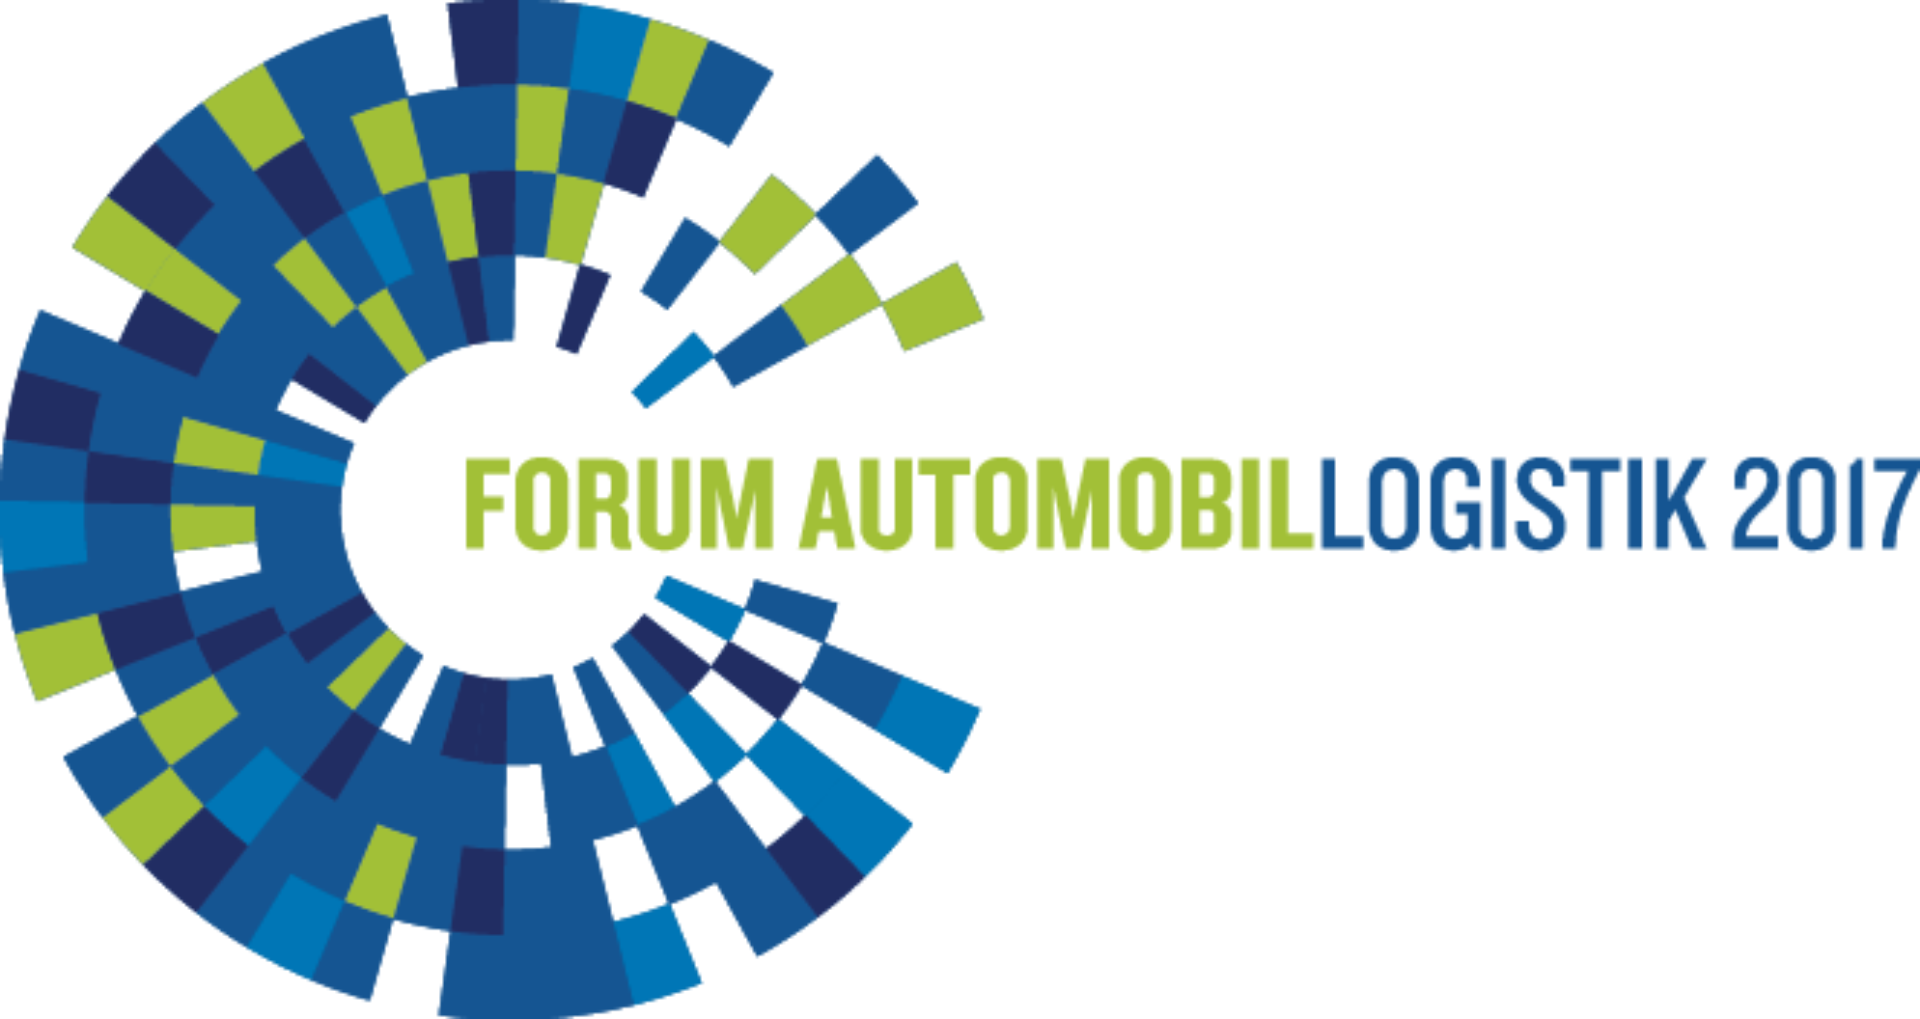 Rund 500 Experten diskutierten am 14. und 15. Februar 2017 über die Digitalisierung und smarte Ansätze für die Automobil-Logistik